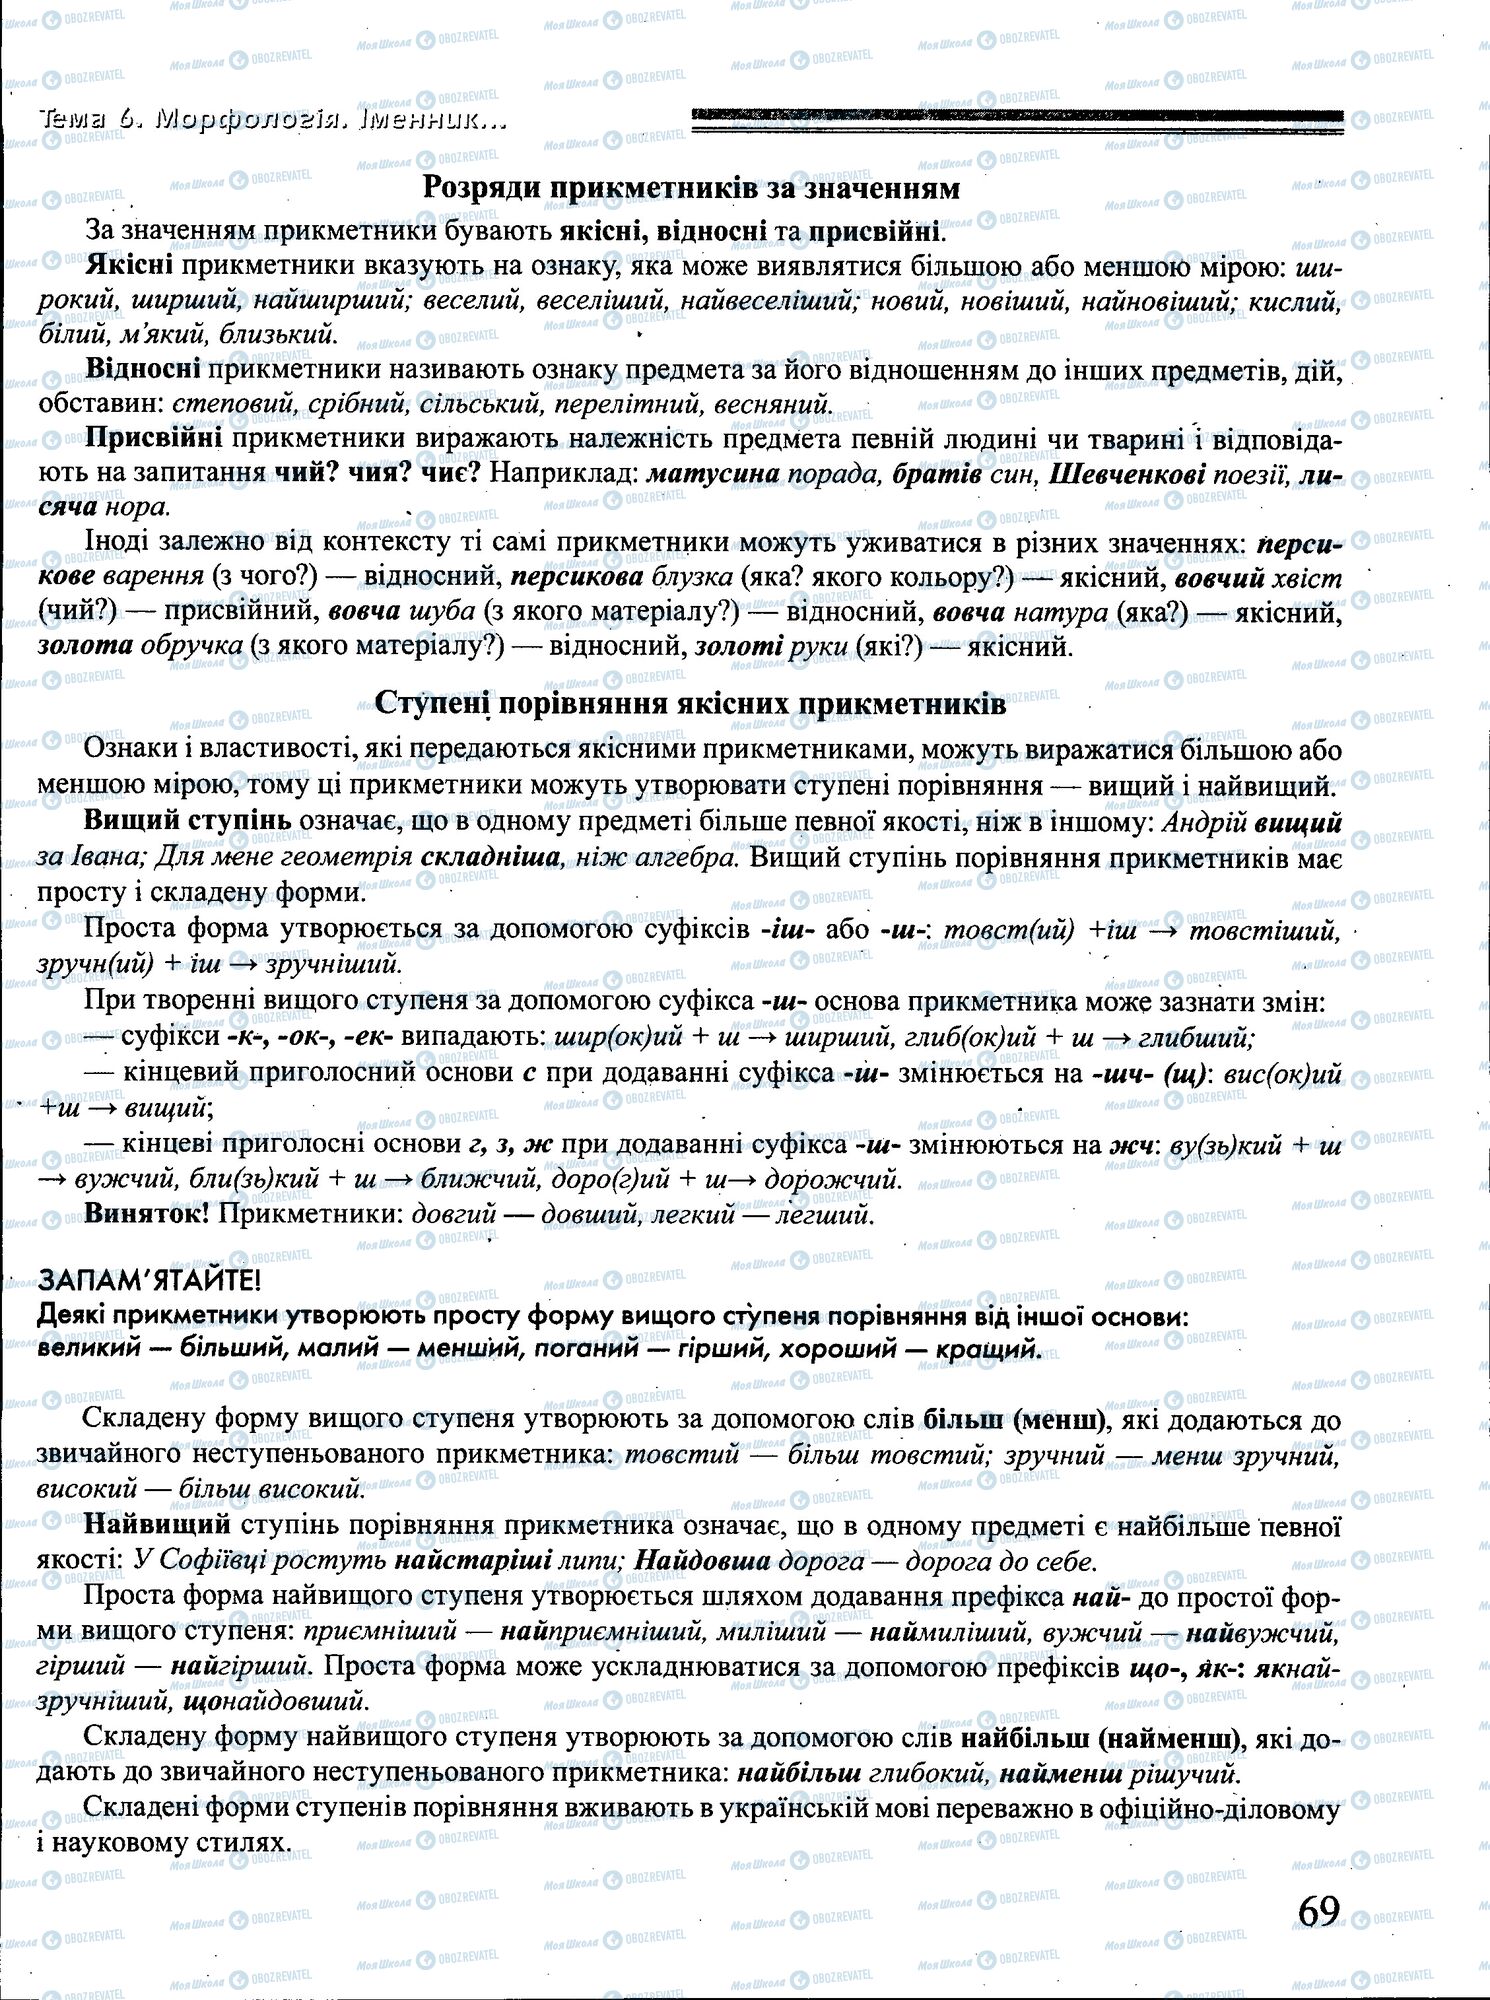 ДПА Укр мова 4 класс страница 069